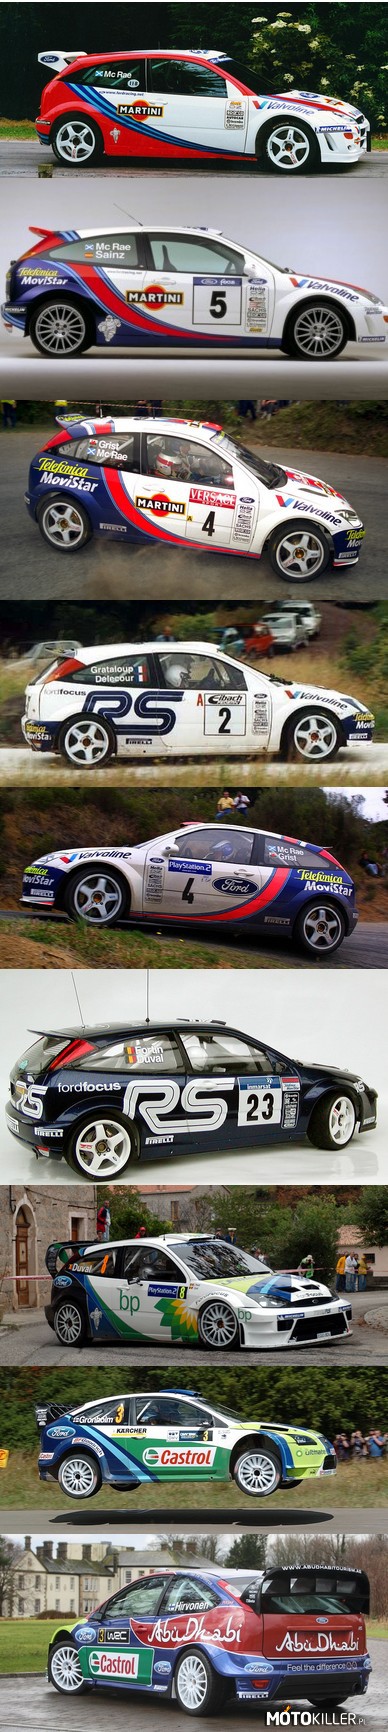 Ewolucja Forda Focusa WRC – Na rajdowych trasach zadebiutował w 1999 roku jako następca Escorta WRC.

Do roku 2008, Ford wyprodukował 8 wersji tego samochodu. Pierwsza wersja, powstała w roku 1999 nazwana została po prostu Focus WRC; drugą, zbudowaną w 2000 roku, oznaczono jako Ford Focus Racing WRC. Począwszy zaś od roku 2001, kolejne ewolucje oznaczane są jako Ford Focus RS WRC XX, gdzie XX to dwie ostatnie cyfry roku, w którym samochód pojawił się po raz pierwszy na rajdowych trasach (01, 02, 03 itd.).

Dane techniczne (teoretyczne*):

Silnik: 1998 ccm, 4-cylindrowy, poprzeczny, turbodoładowany.

Moc[KM]/rpm: 300/6000

Moment obr[Nm]/obr.: 550/4000

Napęd: na 4 koła przenoszony przy pomocy aktywnych dyferencjałów

Skrzynia biegów: 5-biegowa, sekwencyjna

Przyspieszenie (0-100km/h): poniżej 3 sekund :)
*dane teoretyczne gdyż moc 300 KM nie była kontrolowana przez FIA, producenci podawali taką wartość oficjalnie ze względu na załóżenia FIA przy wprowadzaniu klasy WRC.

Wśród polskich kierowców za sterami focusów zasiadali: Janusz Kulig, Krzysztof Hołowczyc i Tomasz Kuchar. 